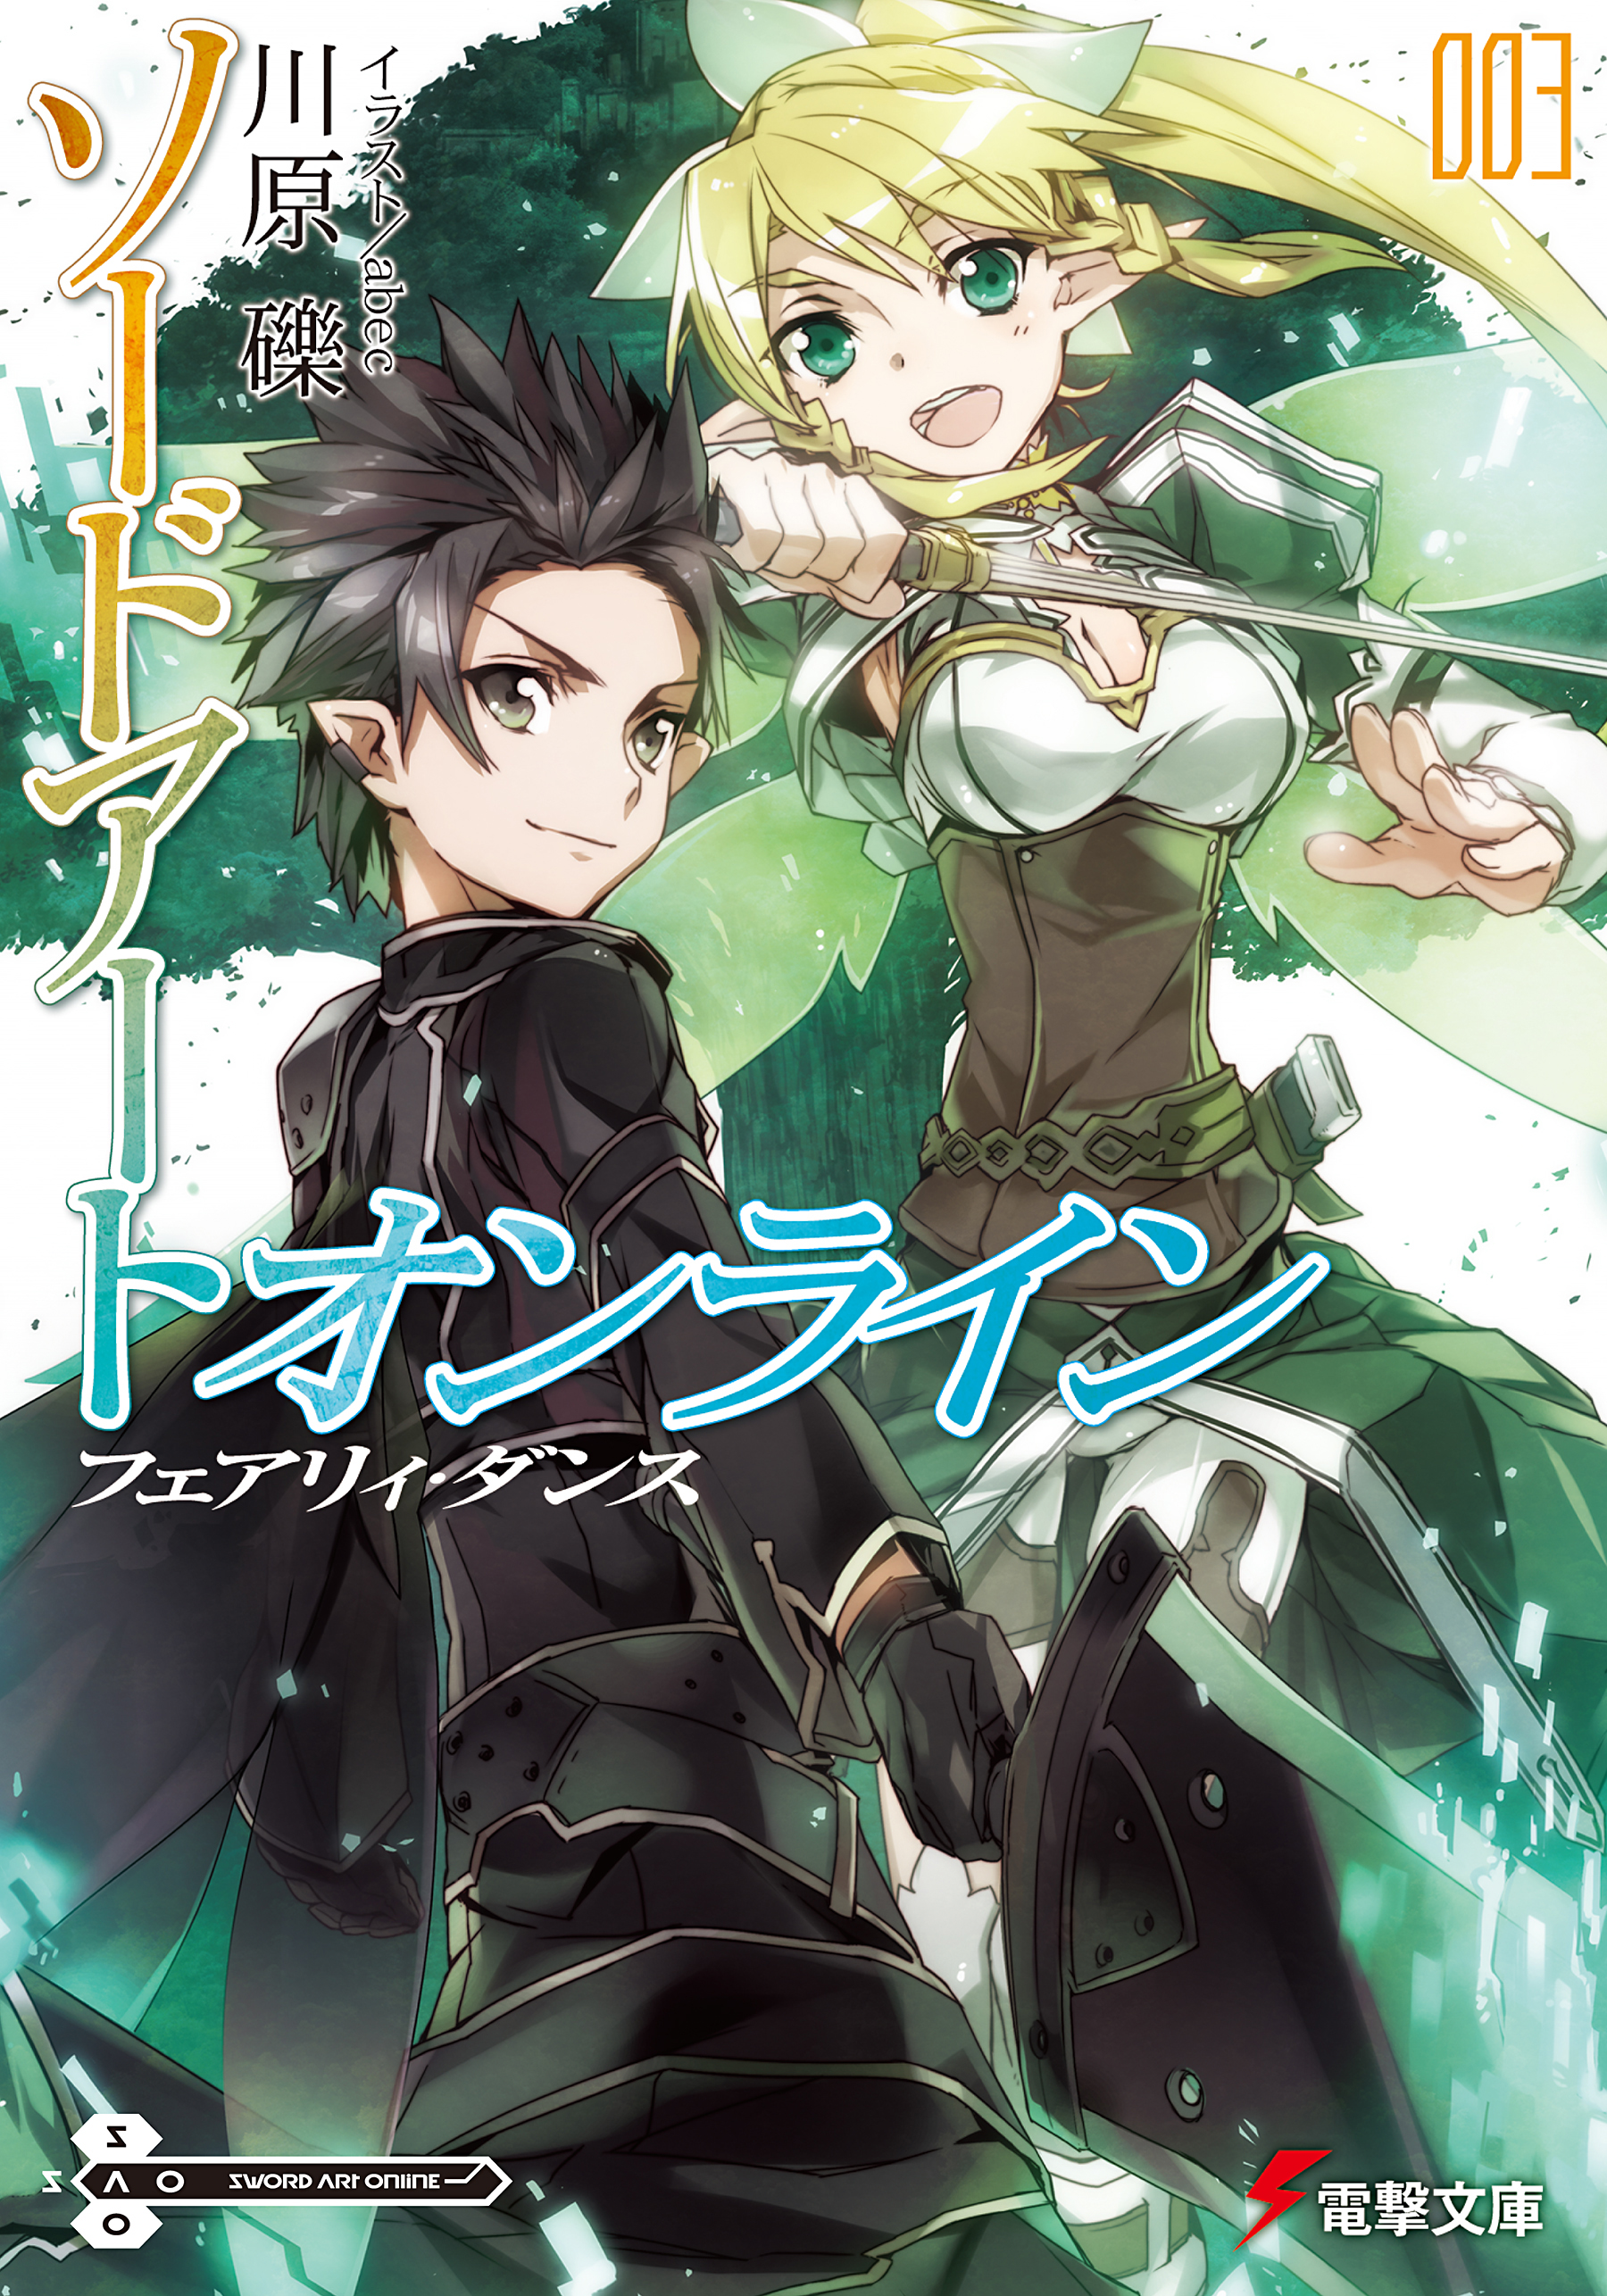 Download Sword Art Online Light Novel Epub - jnovels